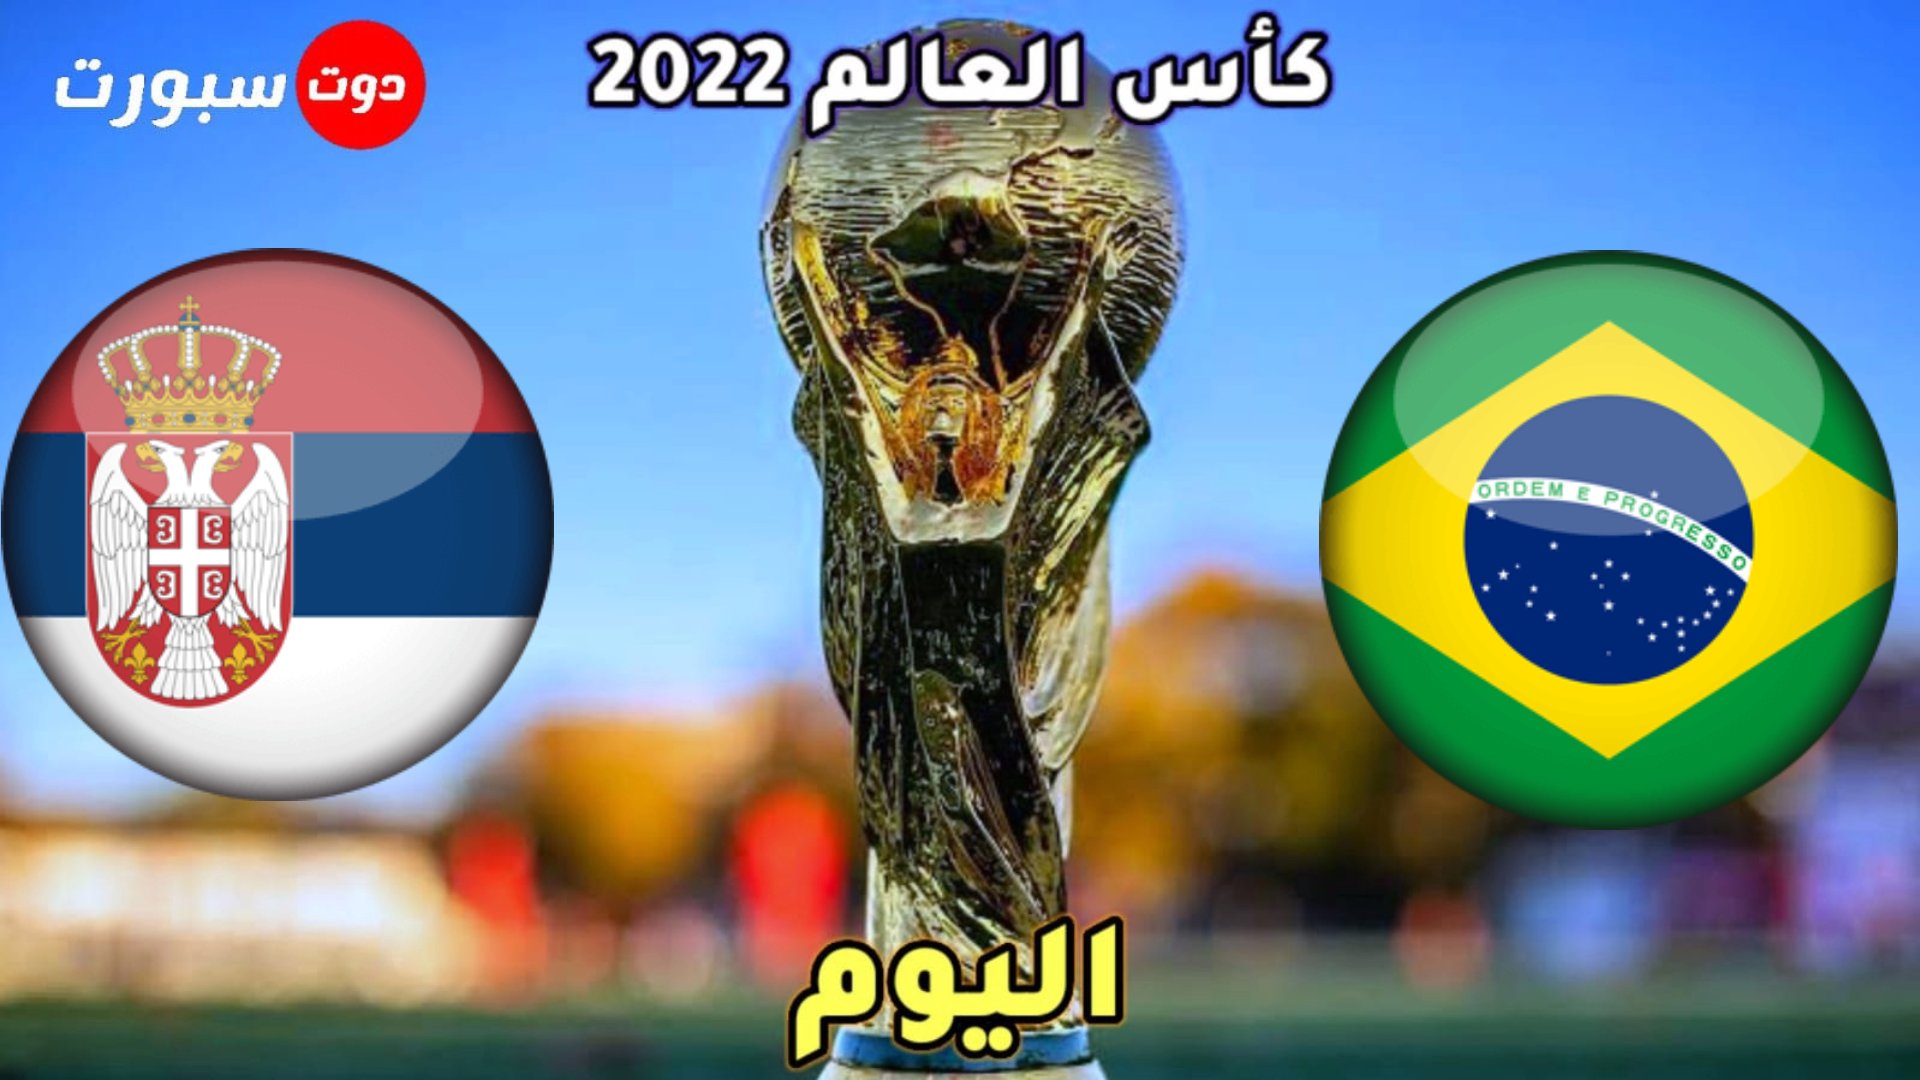 موعد مباراة البرازيل وصربيا اليوم في الجولة الاولى من كاس العالم 2022 والقنوات الناقلة